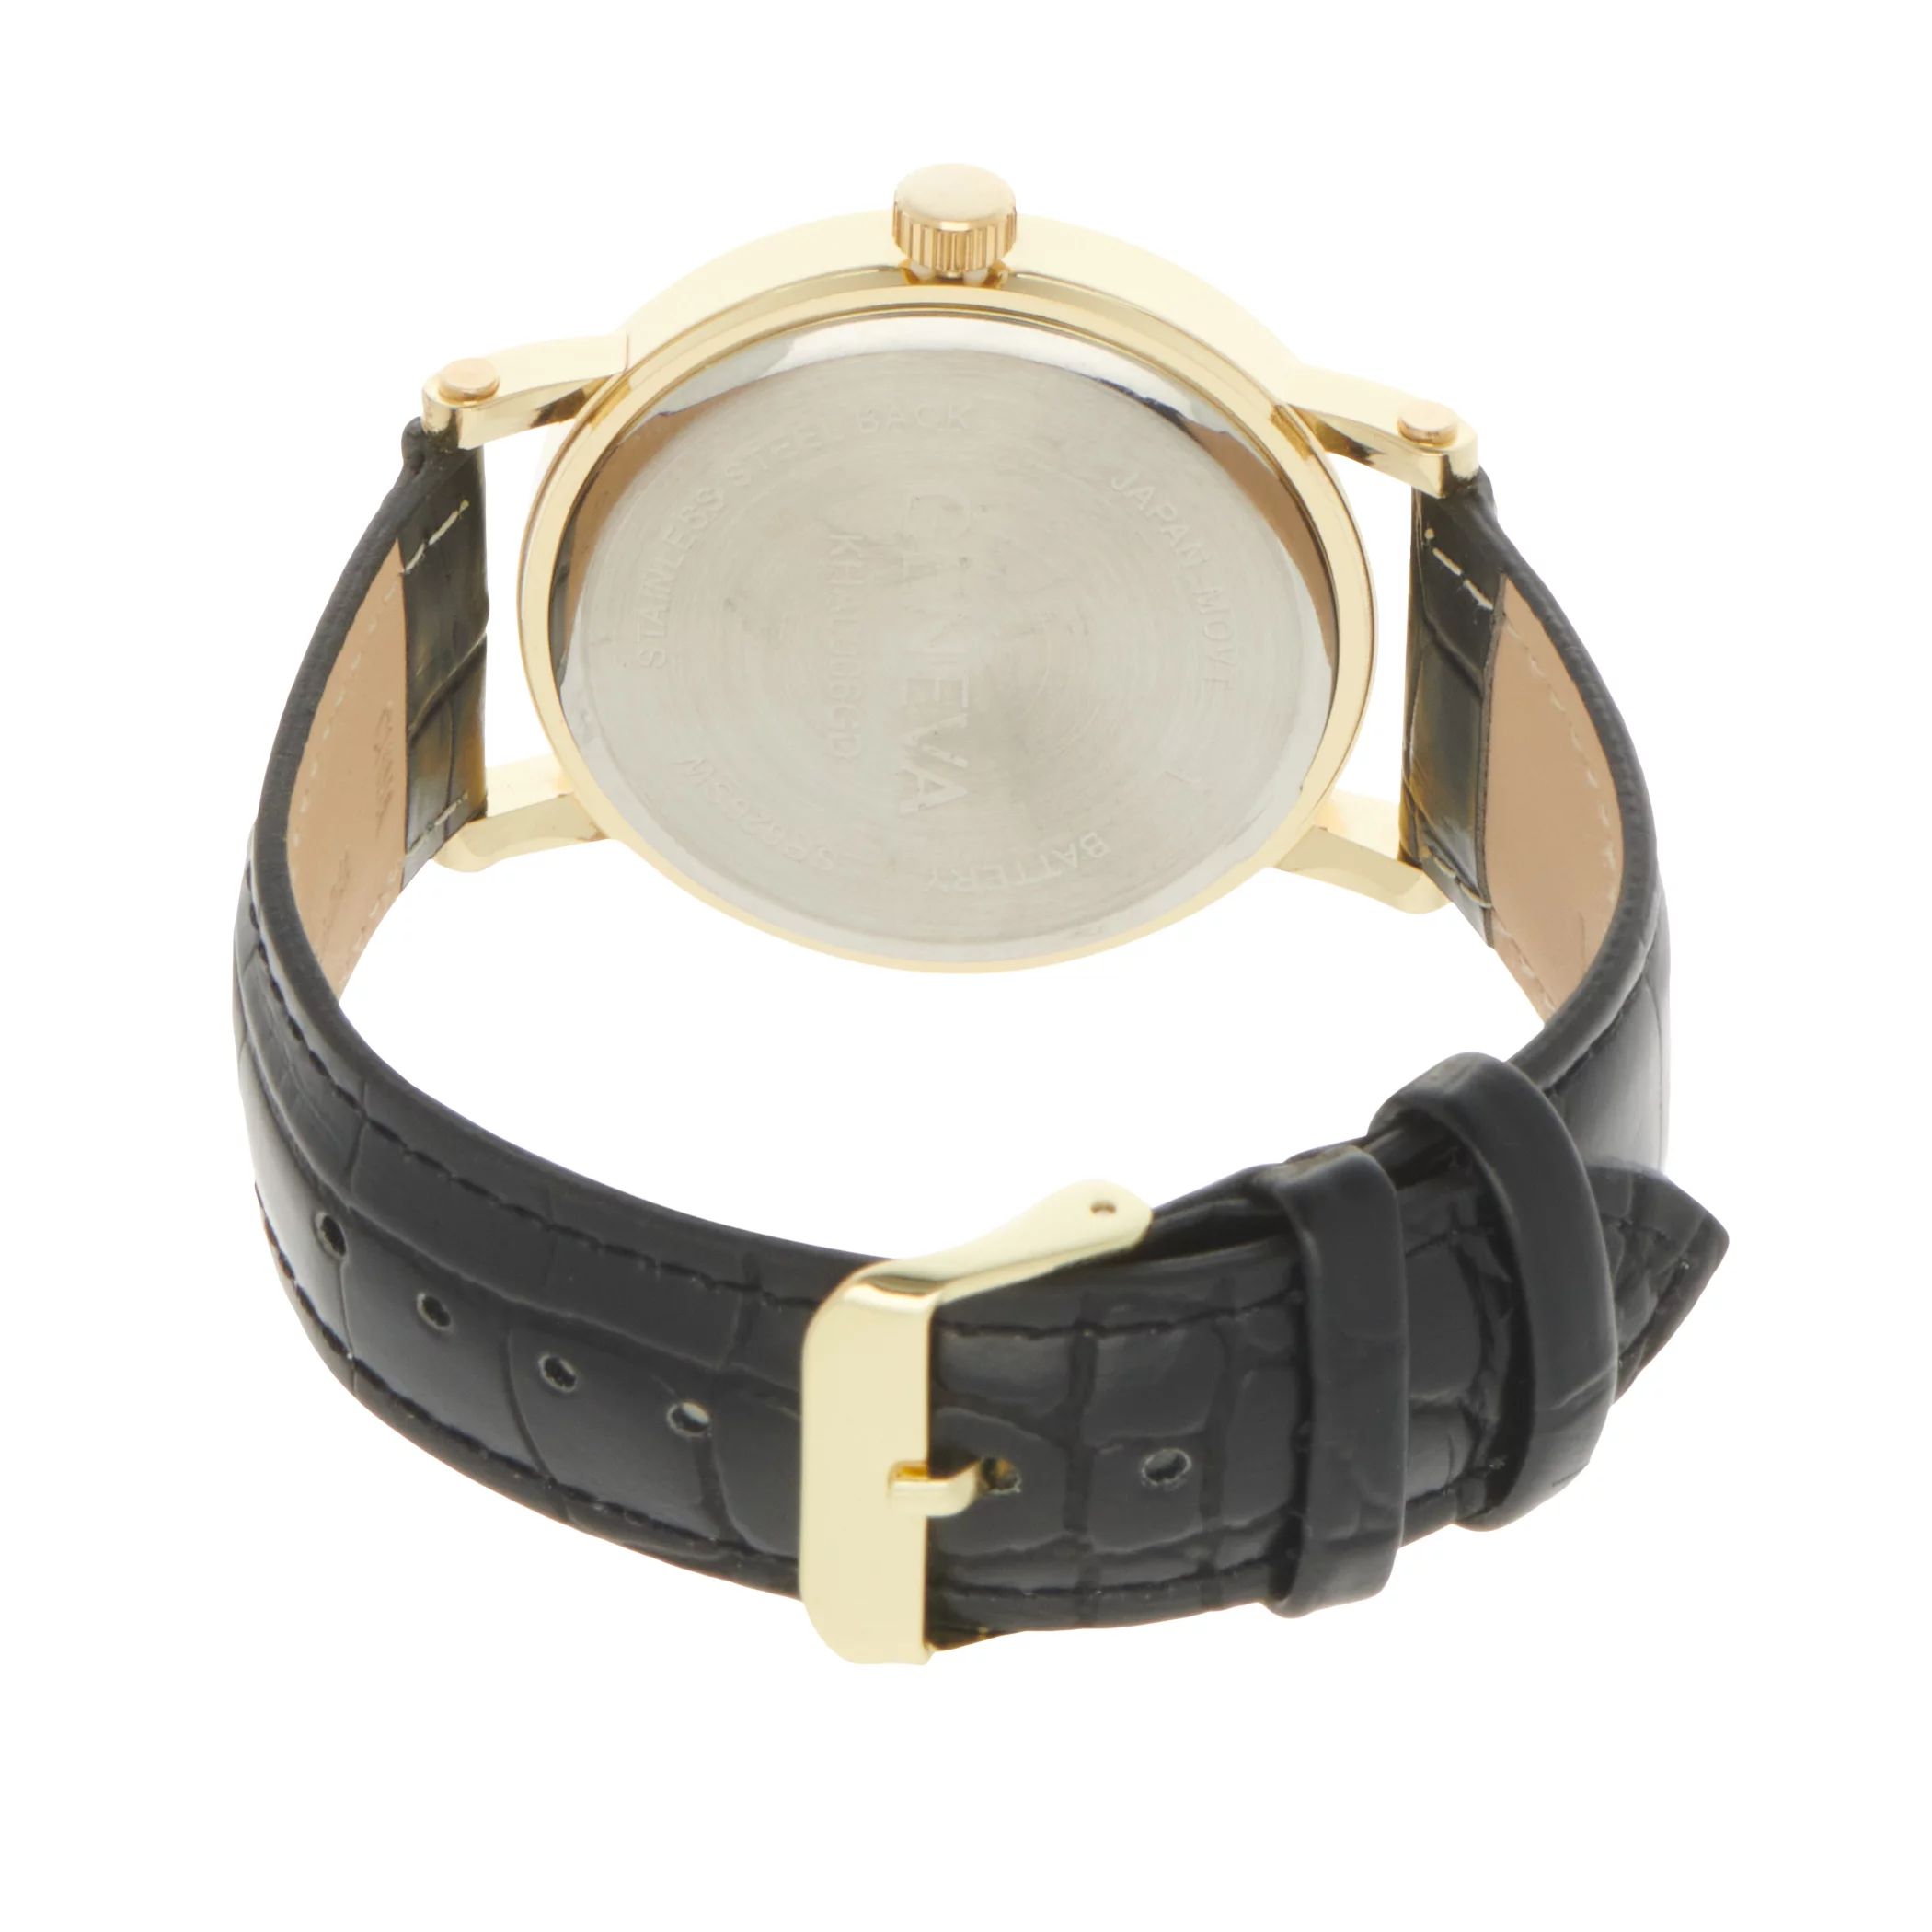 Мужские часы с золотистым ремешком Diamond Accent - KHA0006GD Geneva